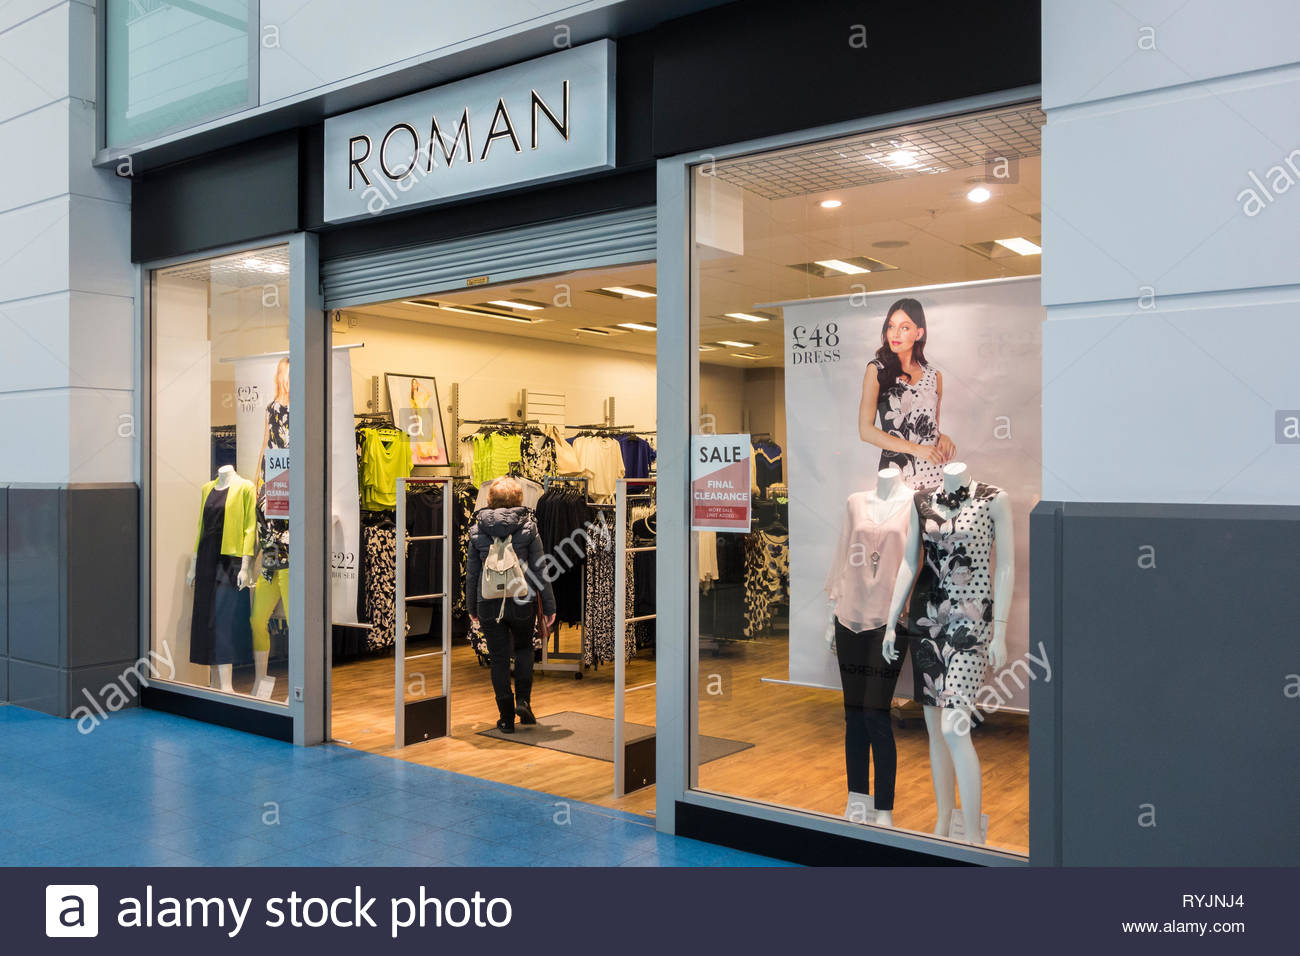 romans clothes shops sales